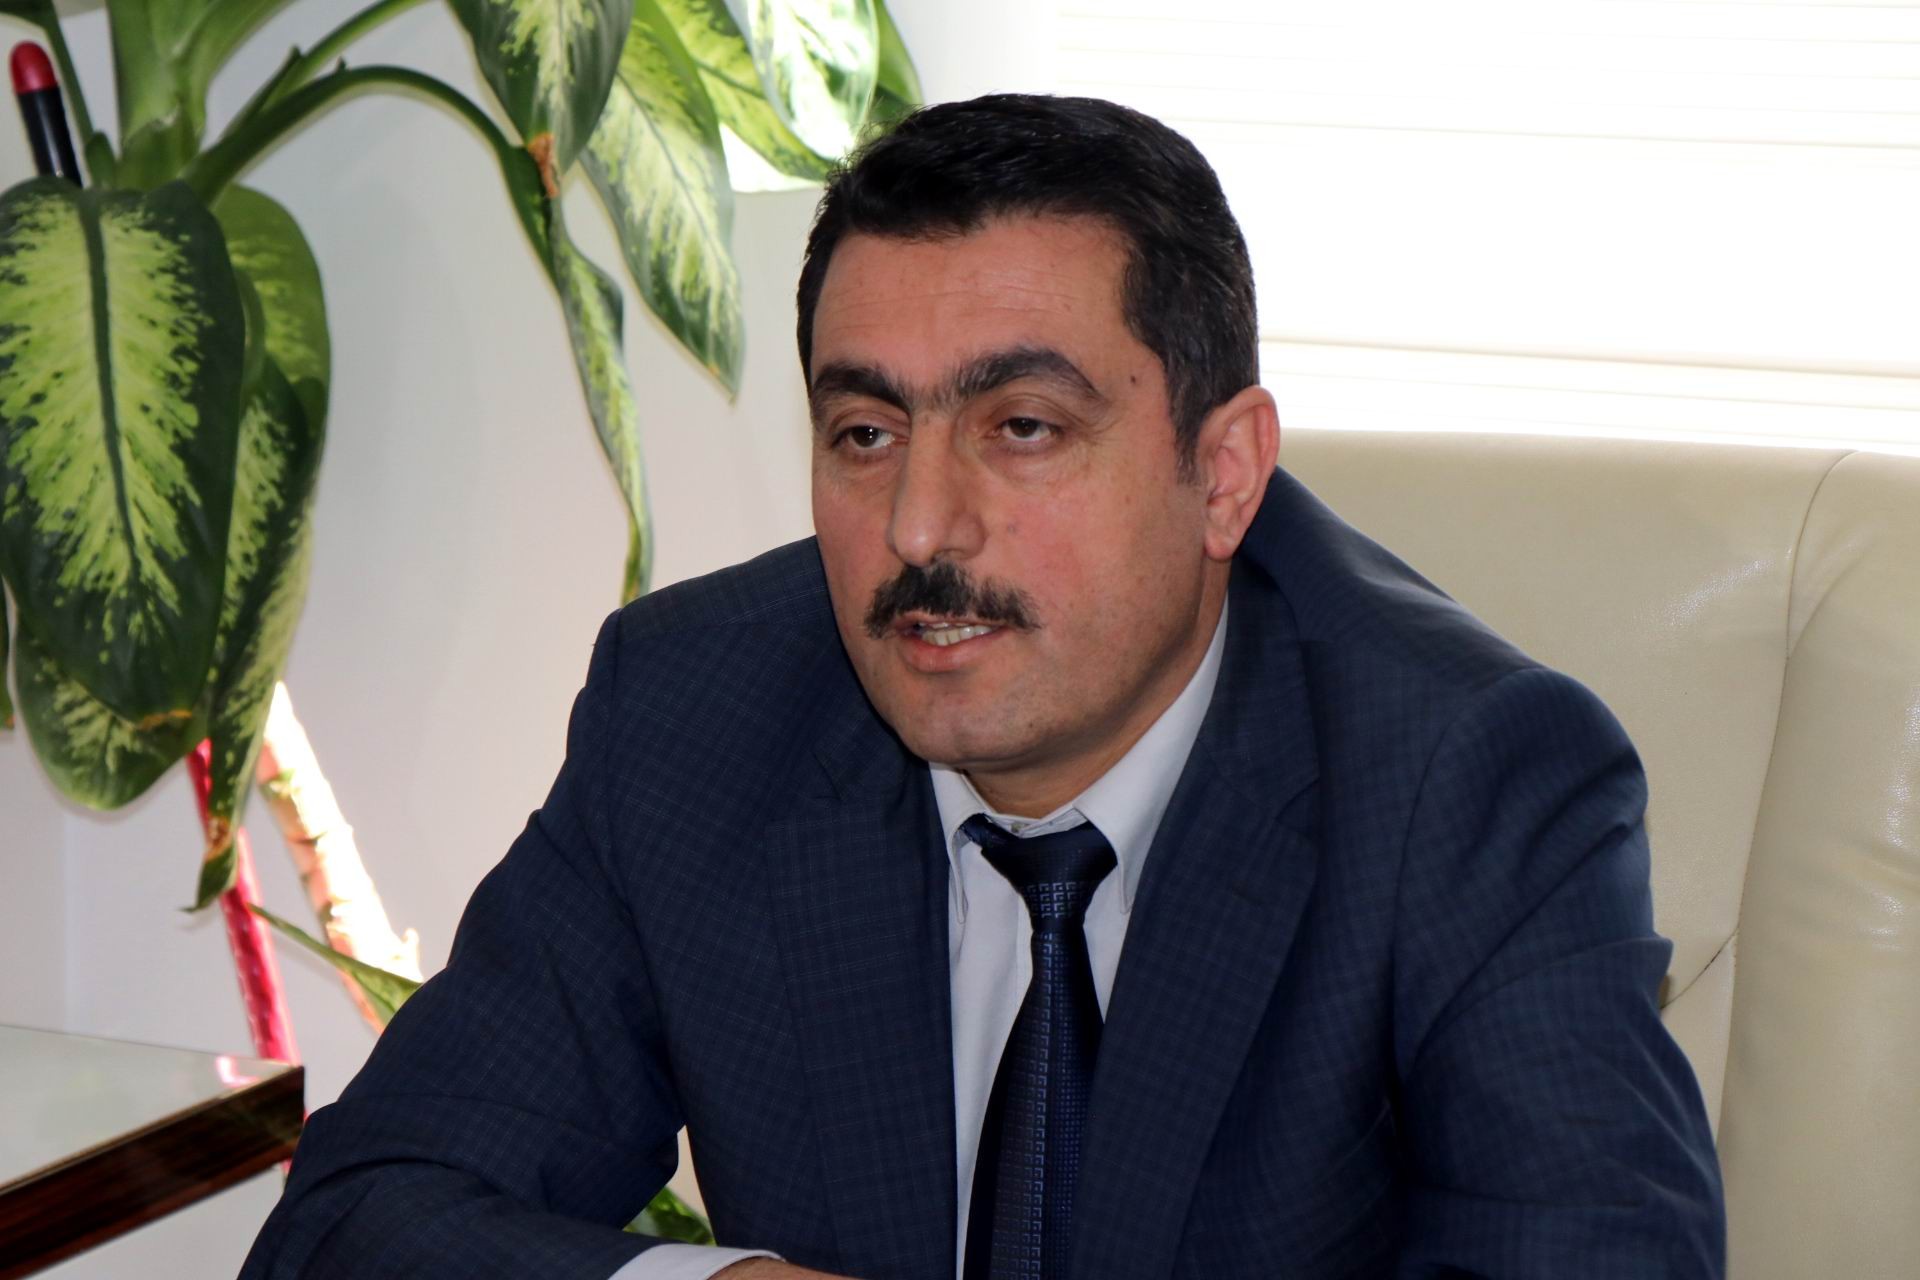 Kayseri Kırmızı Et Üreticileri Birliği Başkanı Ercan Aras: “Kayseri besicisi çok büyük zarar ediyor”